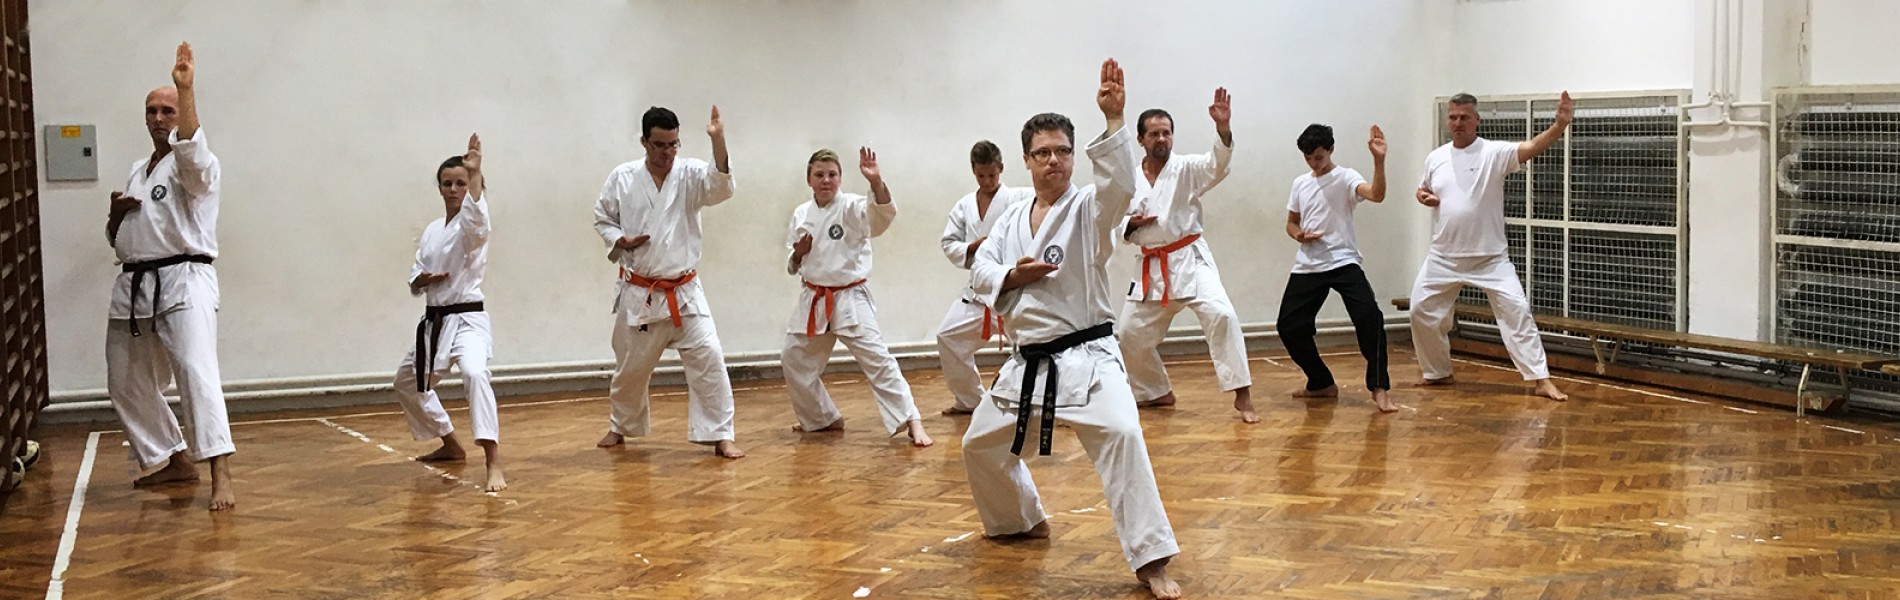 Wado-ryu karateoktatás Szegeden